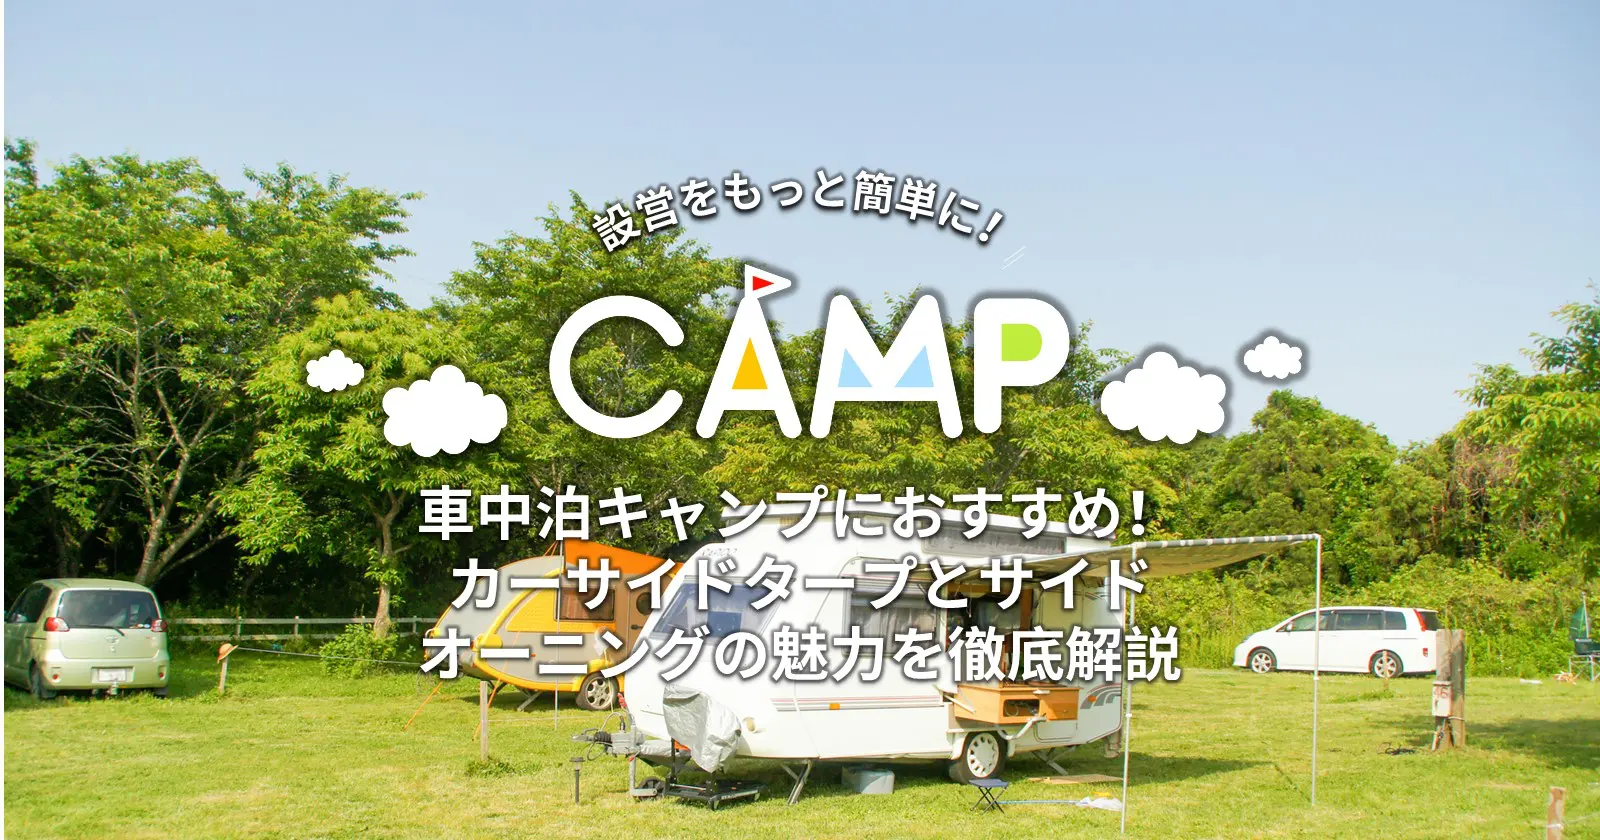 車中泊キャンプにおすすめ カーサイドタープとサイドオーニングの魅力を徹底解説 Takibi タキビ キャンプ アウトドアの総合情報サイト